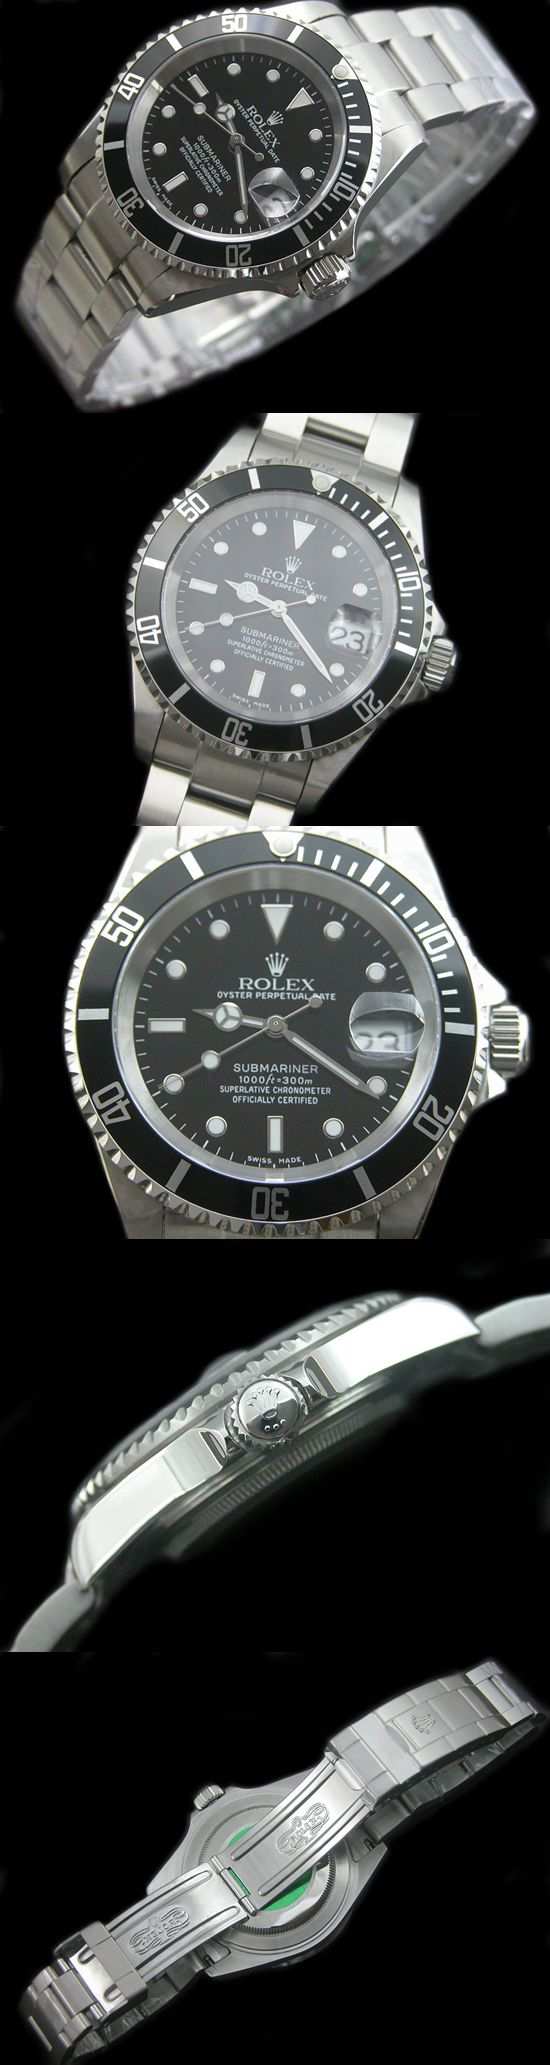 おしゃれなブランド時計がロレックス-サブマリーナ-ROLEX-16610-15-男性用-JPを提供します.